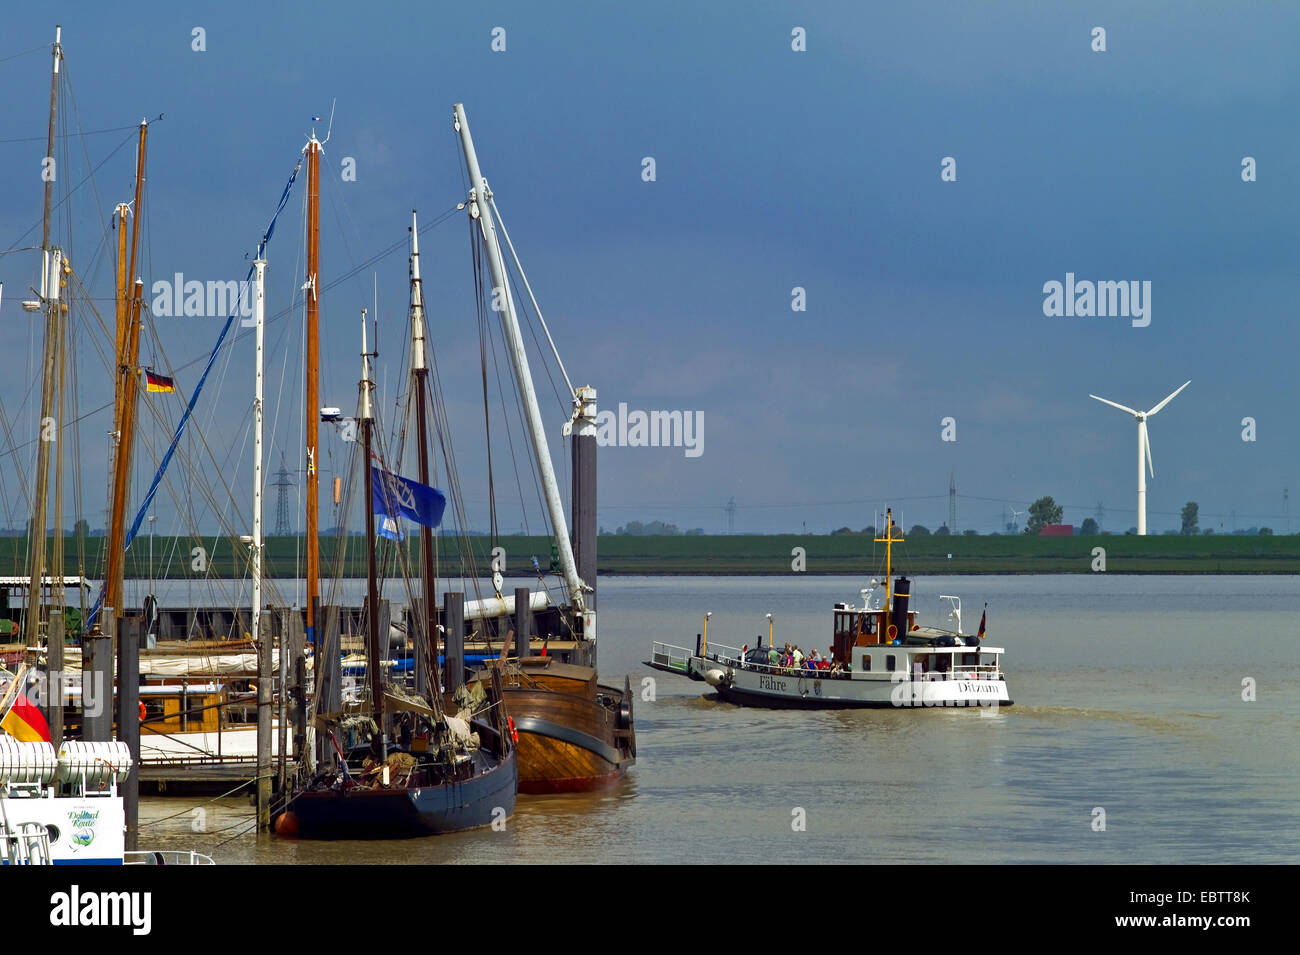 Bateaux à voile dans le port et le ferry boat, ALLEMAGNE, Basse-Saxe, Hage Banque D'Images